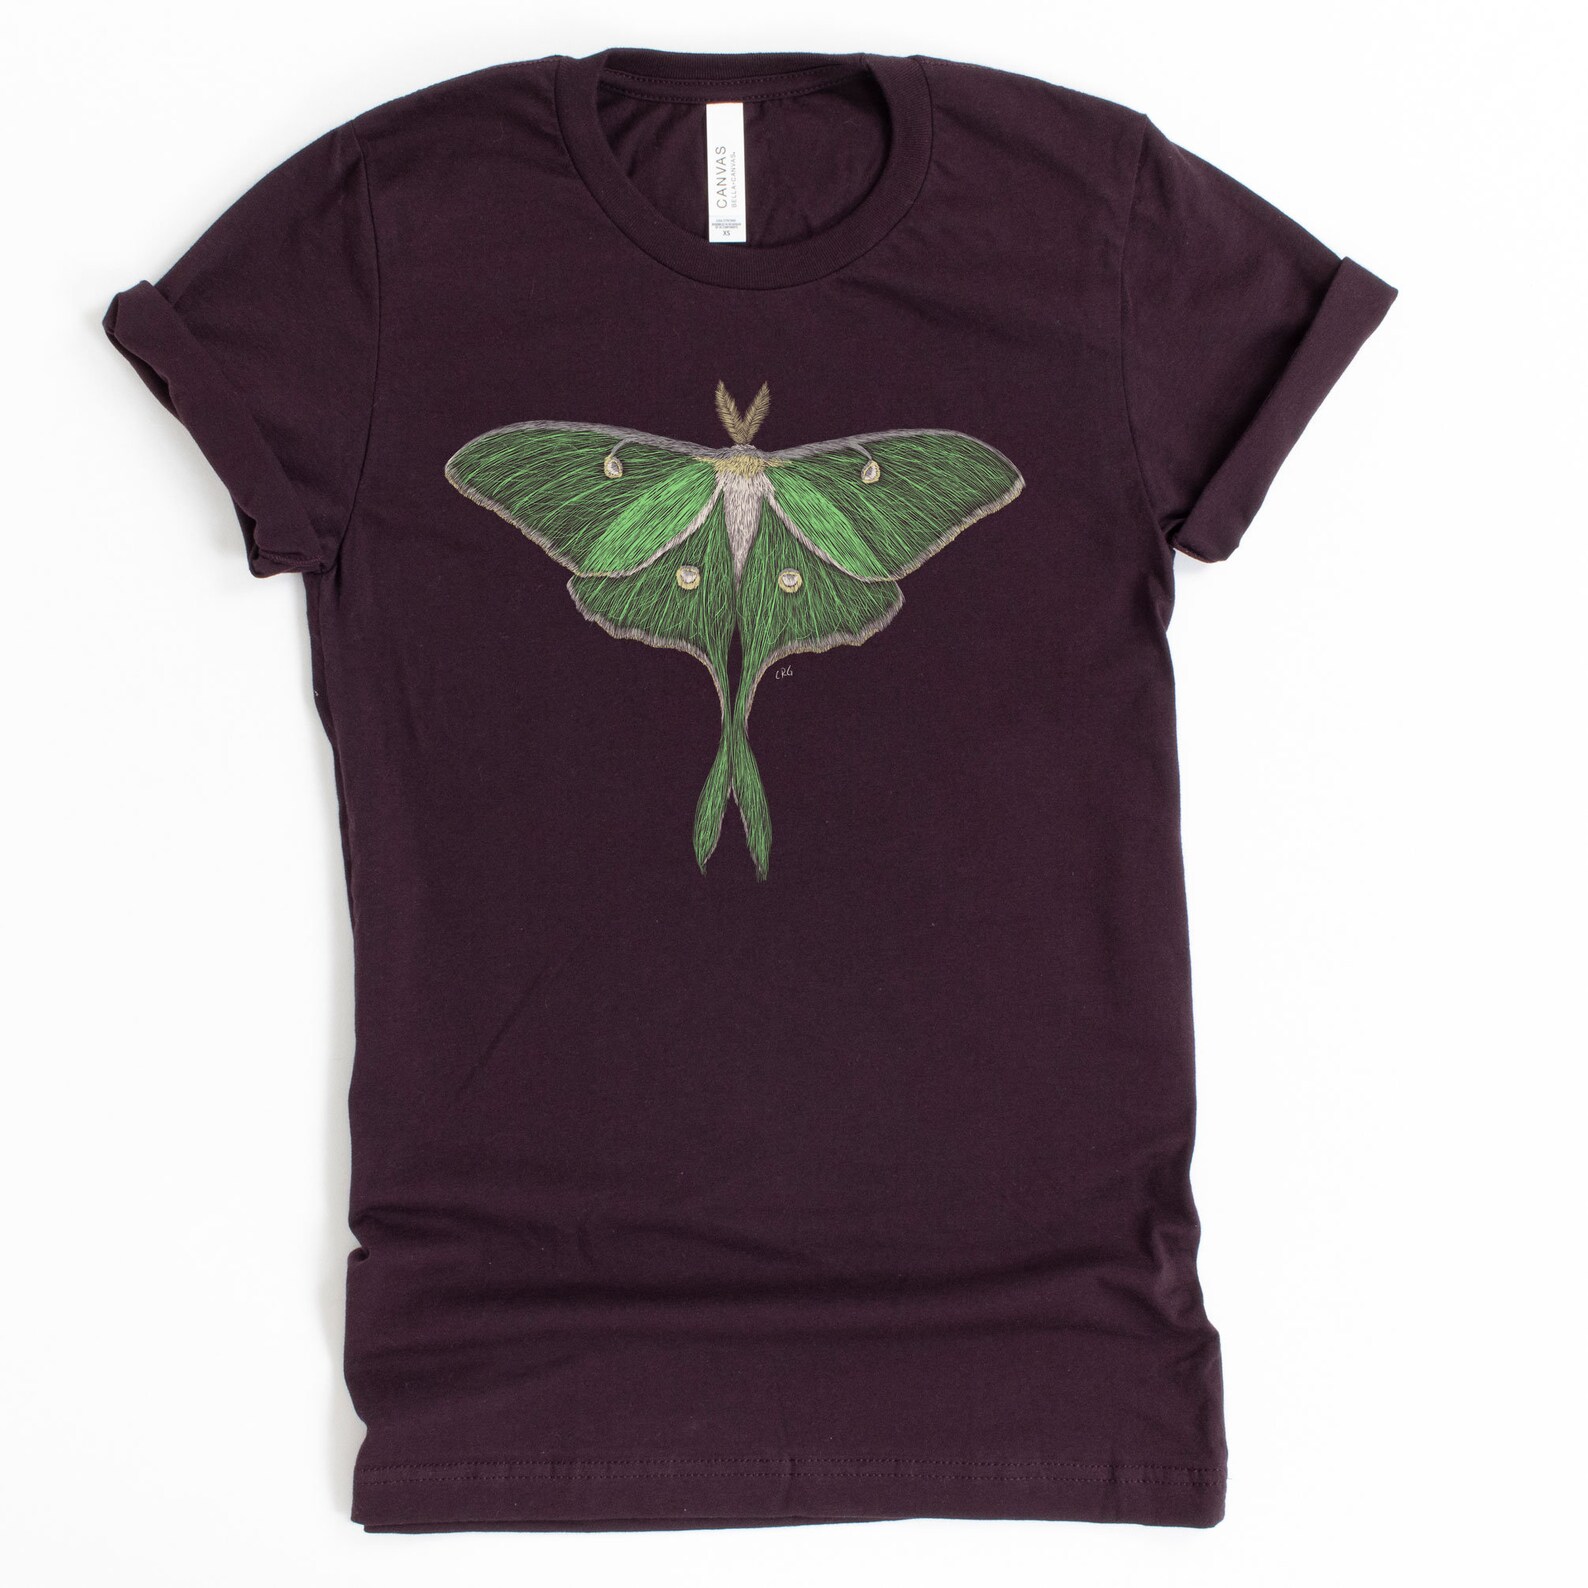 Luna Moth Shirt / Luna Moth / Moth Shirt / Moth / Luna Moths / | Etsy